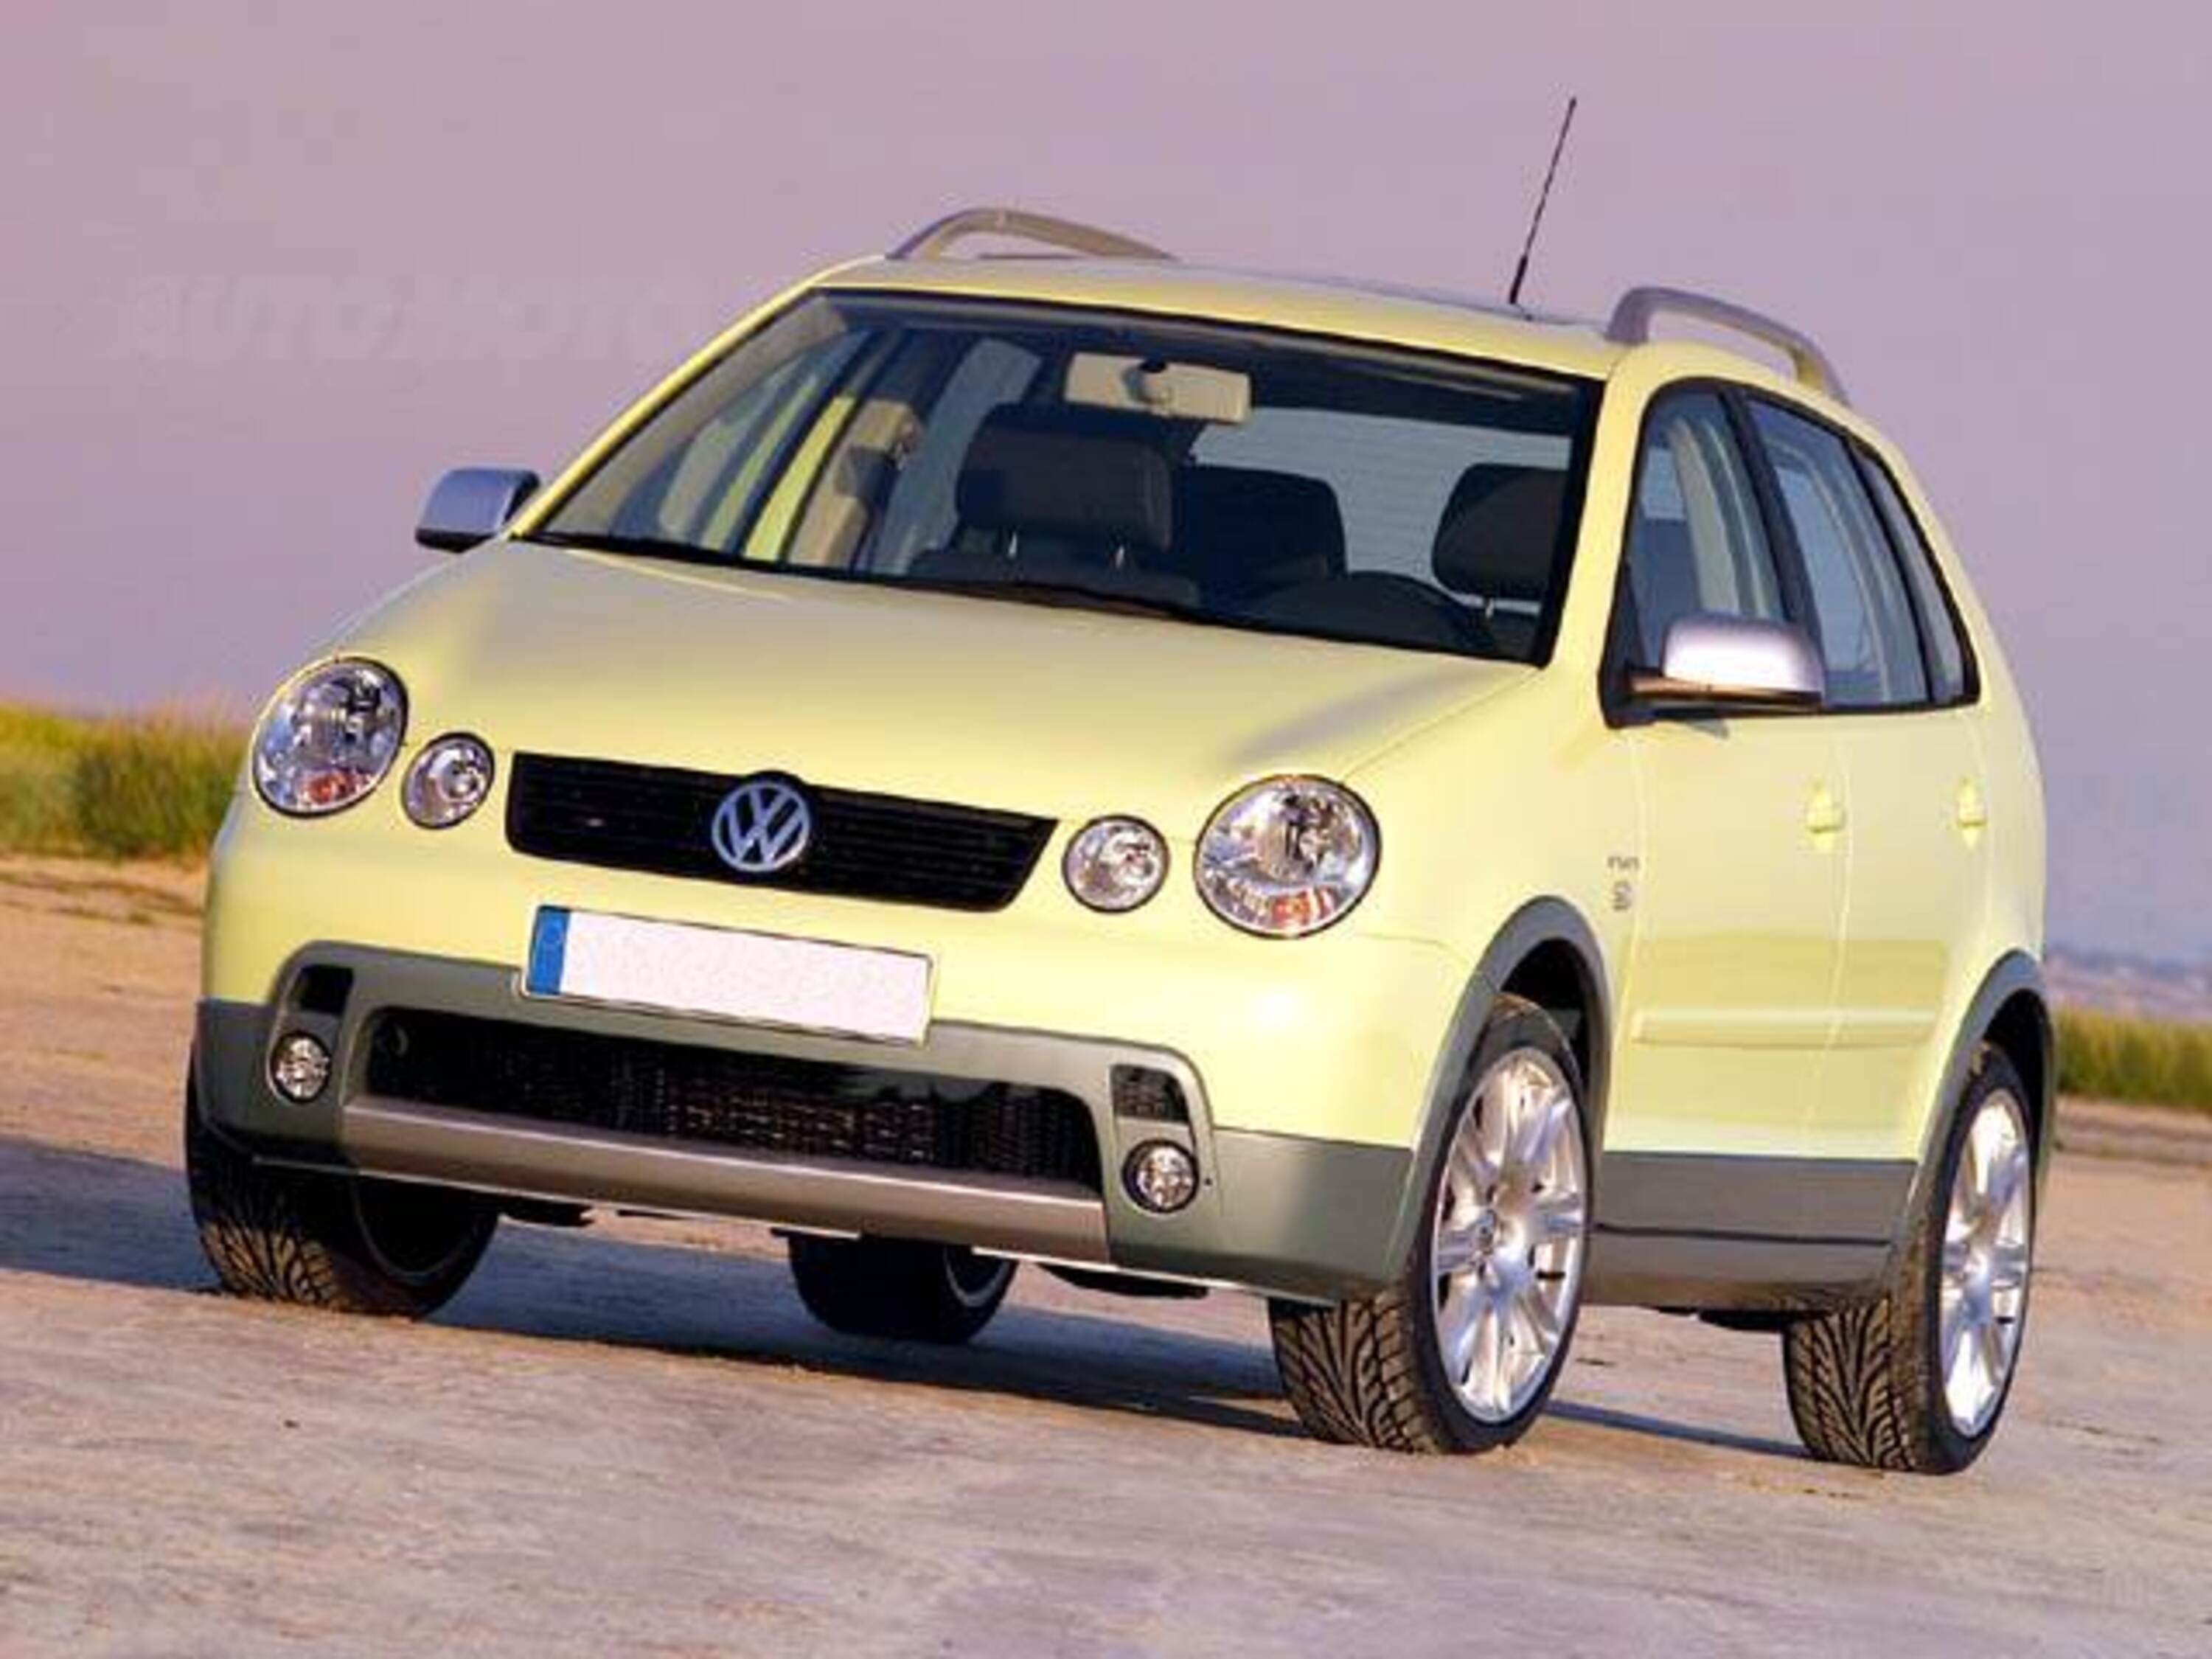 Volkswagen Polo Fun 1.2 12V